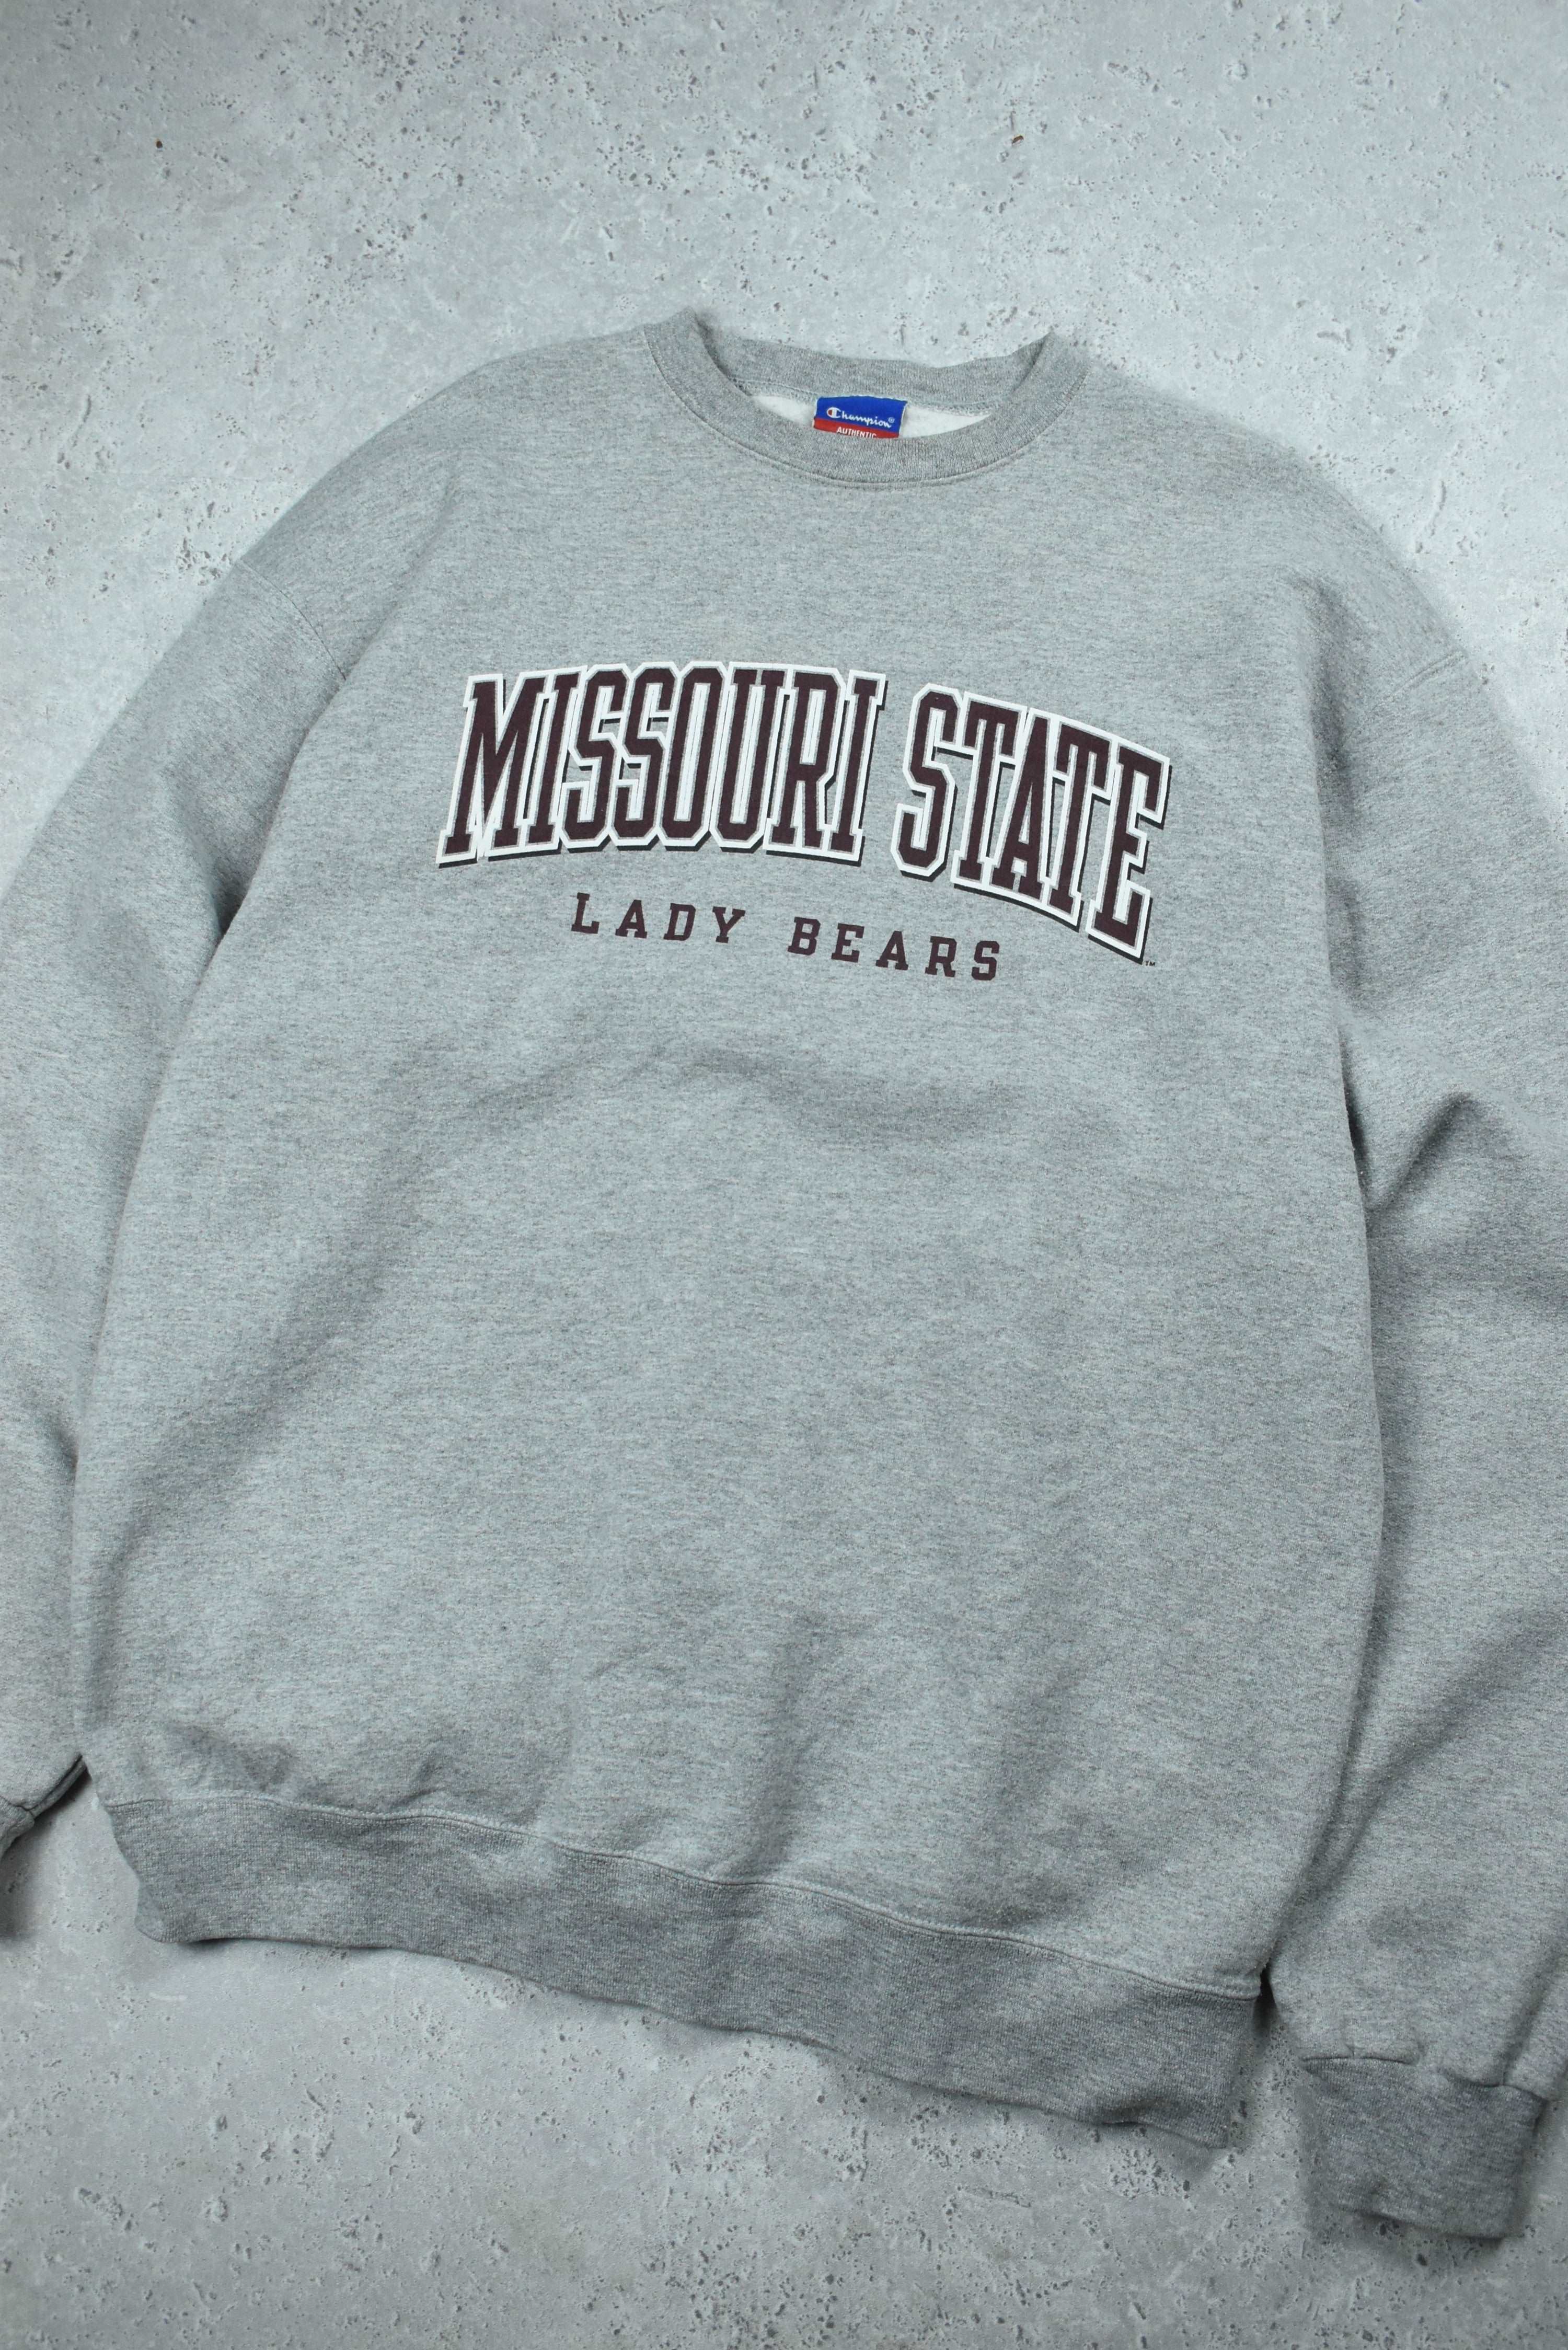 Vintage Champion Missouri State Sweatshirt XL